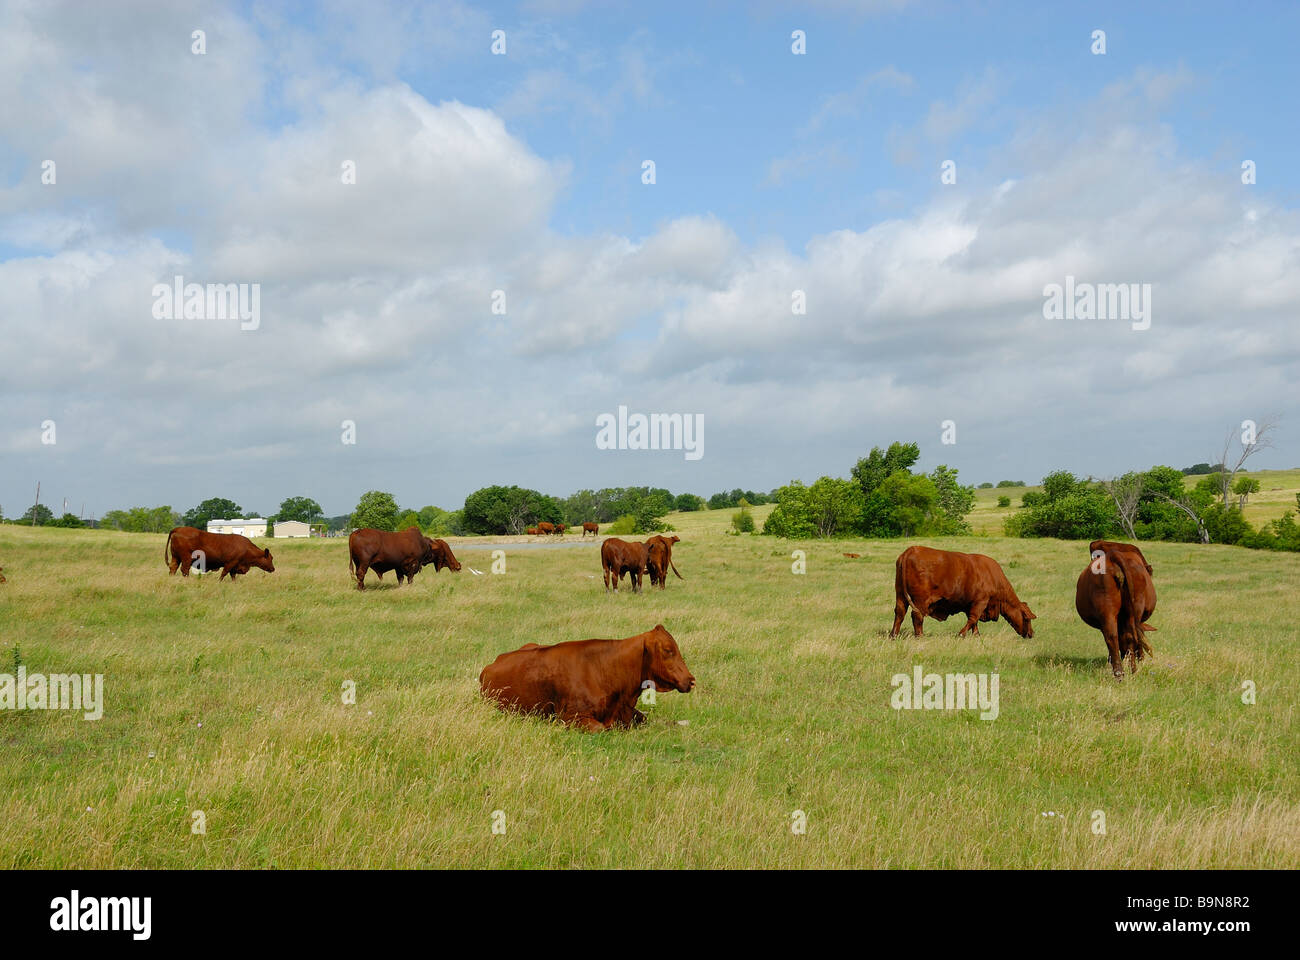 Rinder grasen auf dem Rasen in einem offenen Bereich mit Vögel, ist dieses Feld in einer ländlichen Gegend. Stockfoto